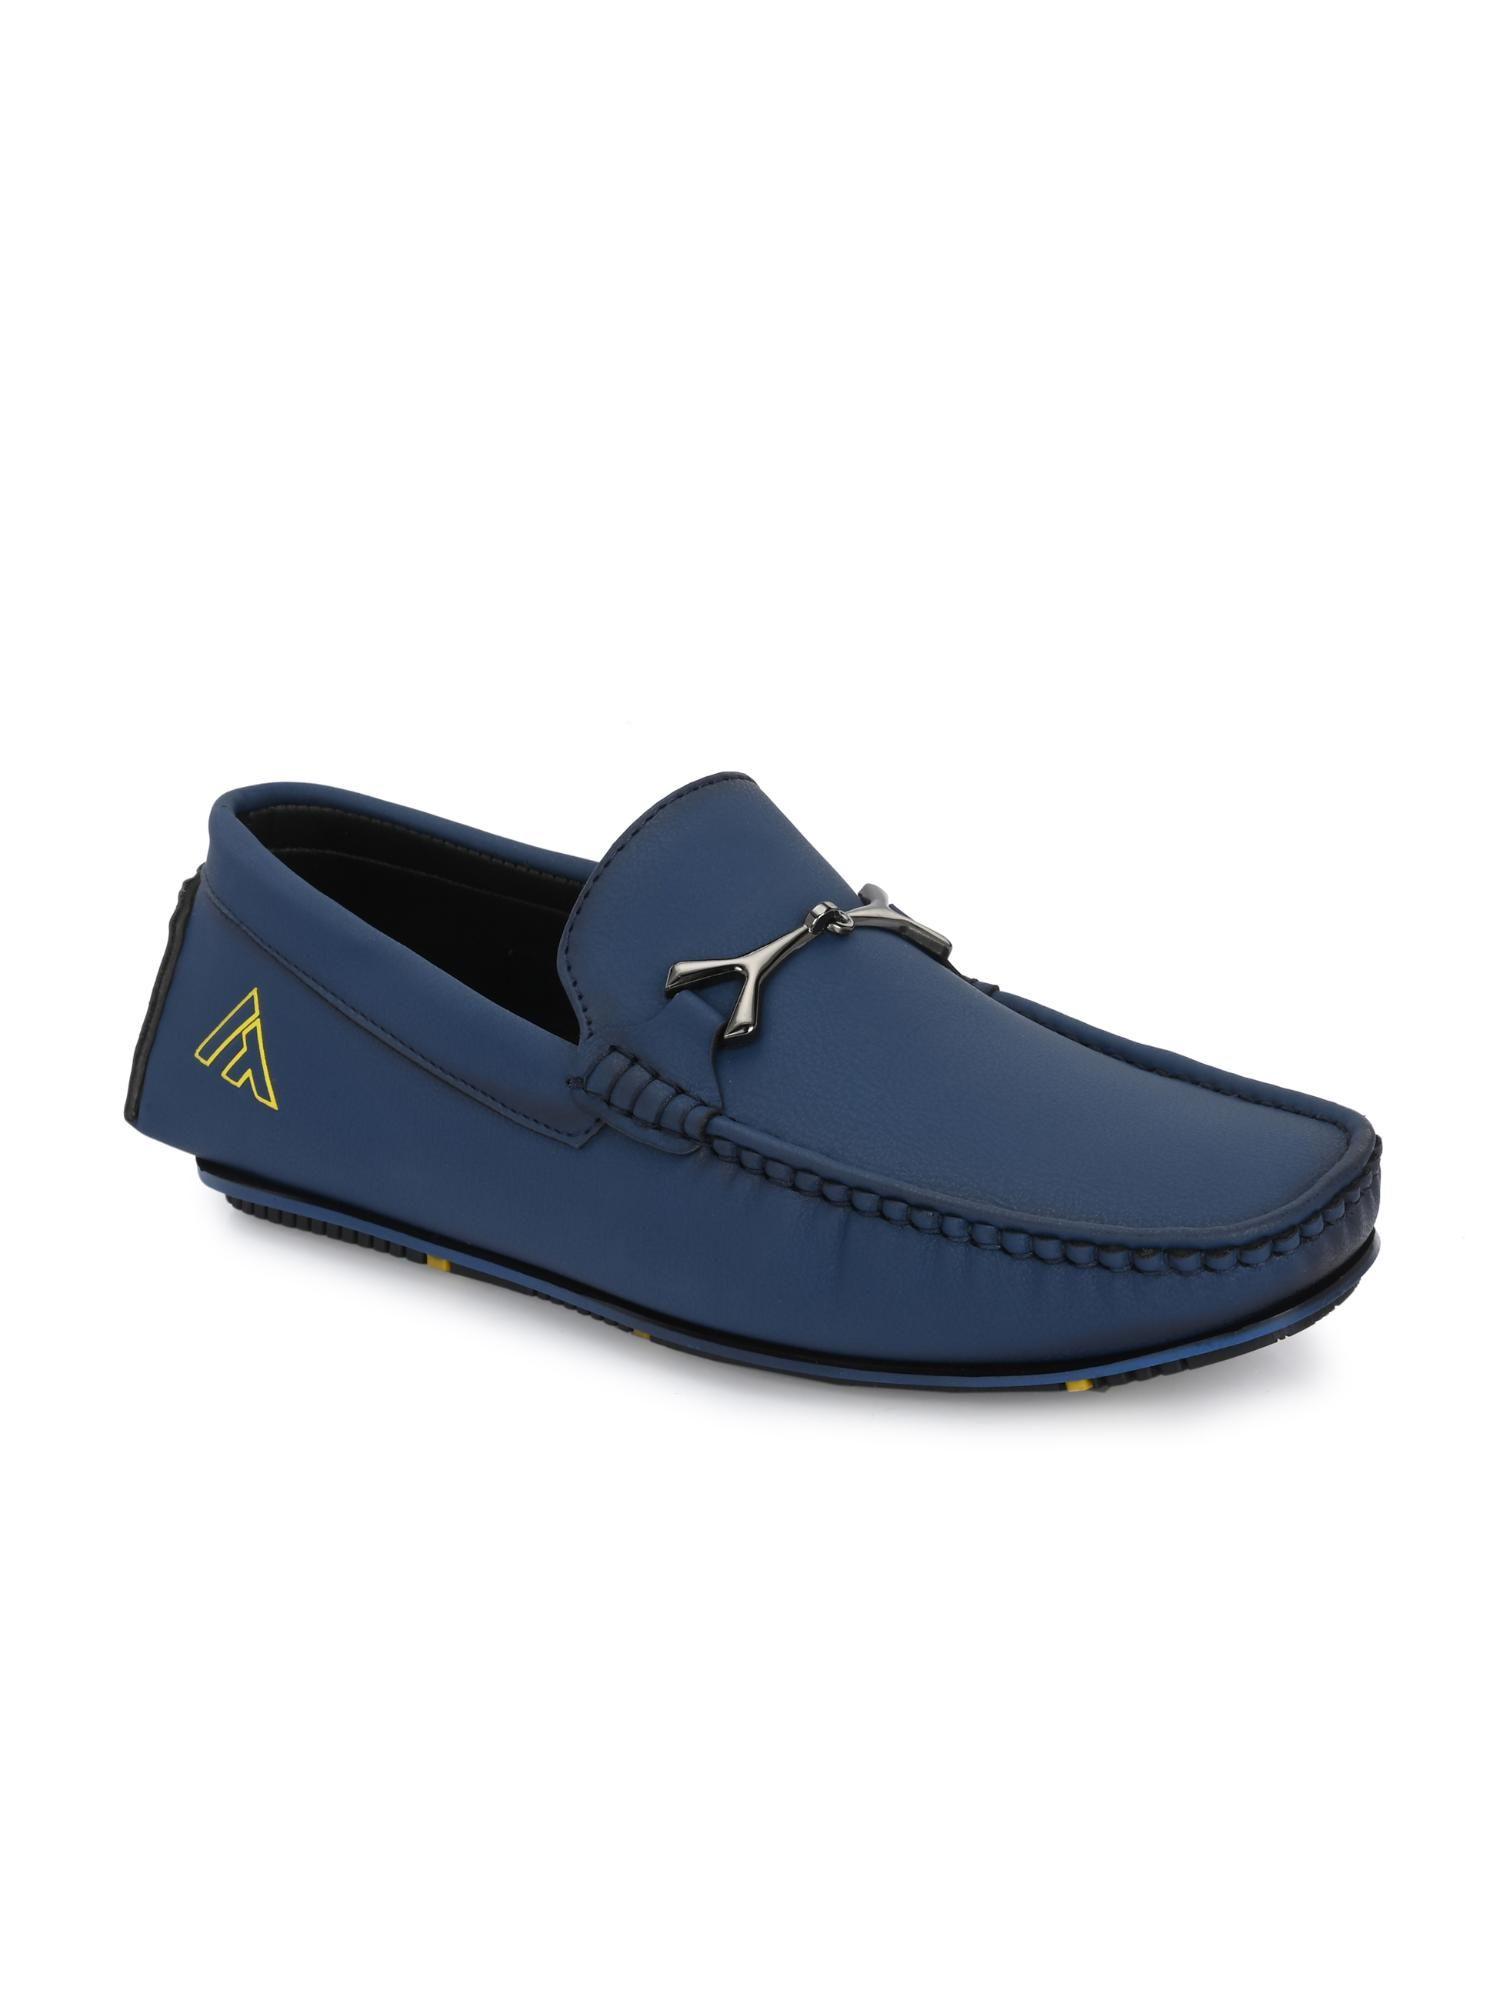 trendy-silicon-muti-coloured-anti-slip-714-vibrant-blue-loafers